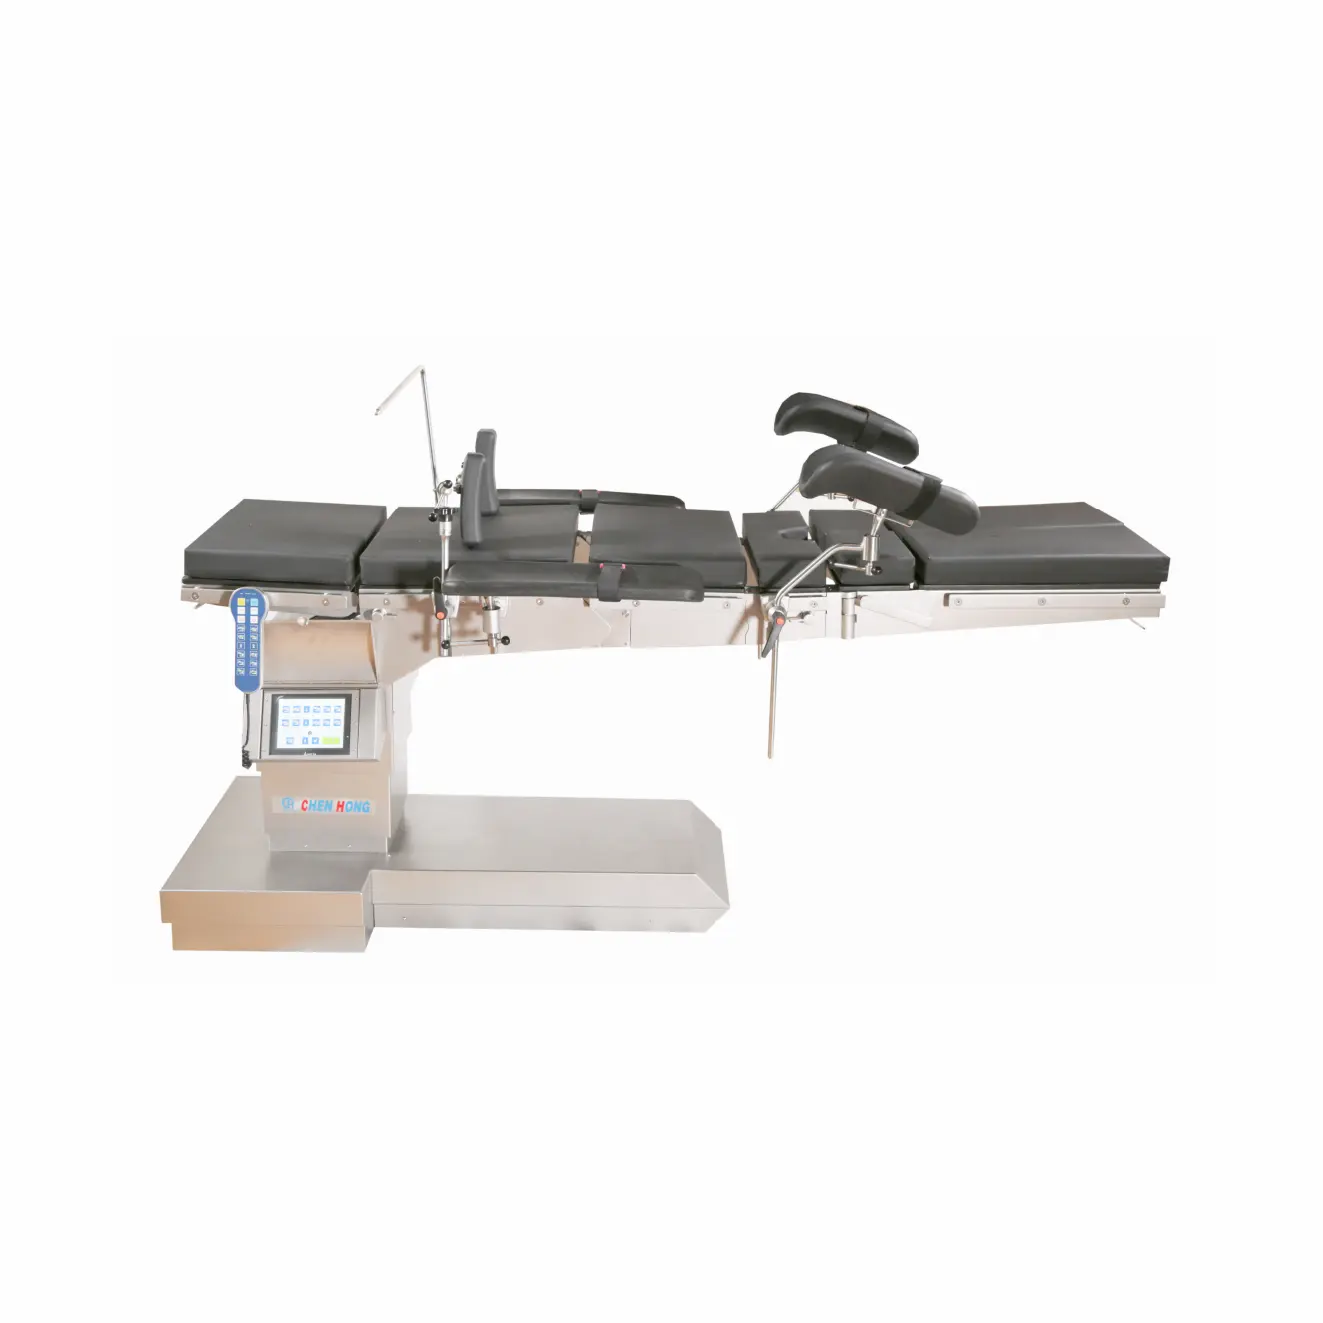 Veya oda kullanımı cerrahi operasyon için hidrolik çalışma masası uç eğirme tipi elektrikli masa